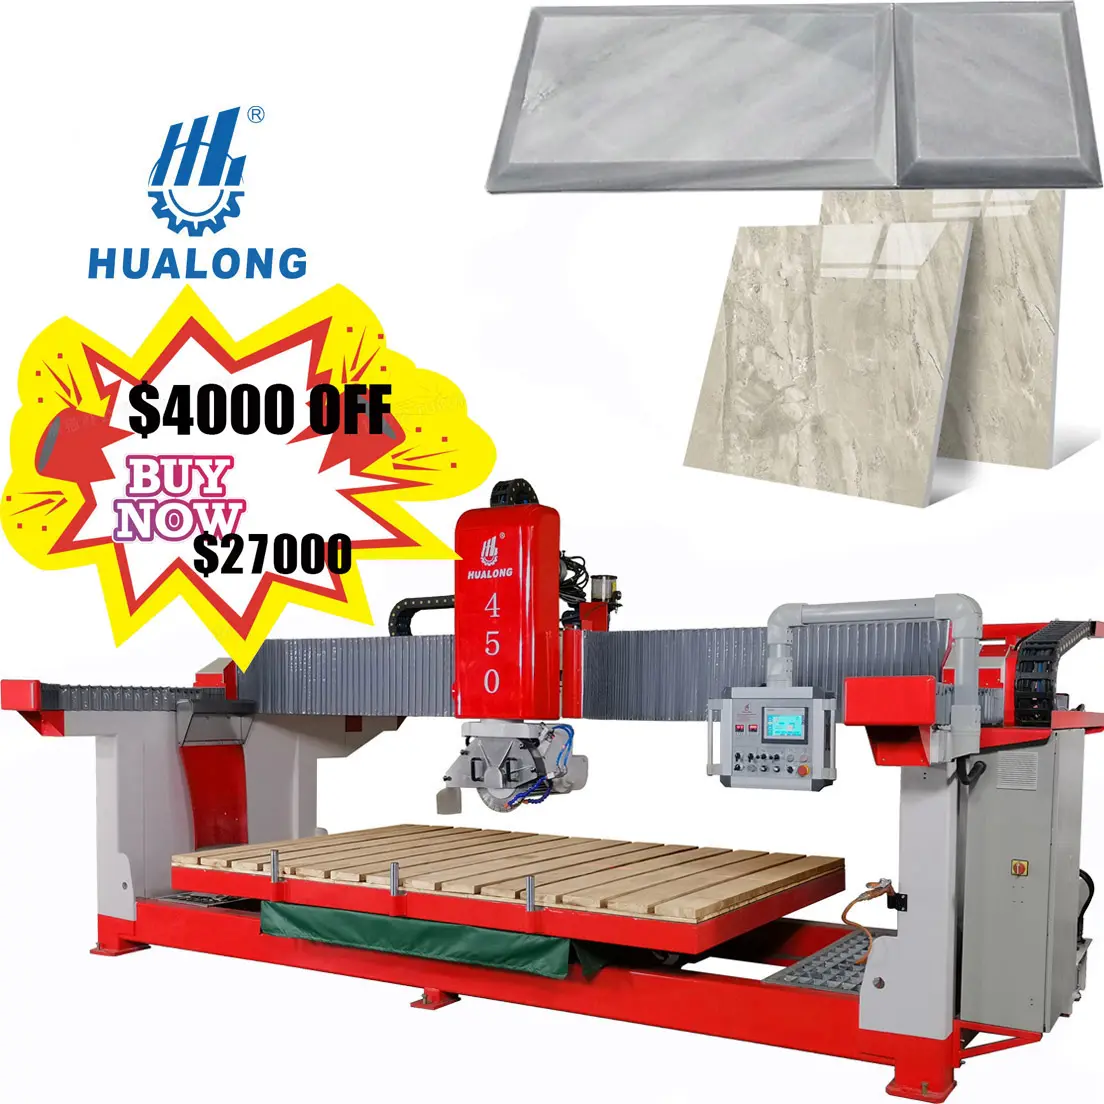 Hualong stone machinery Professional Supplier Bridge Cutting Machine Bridge Saw Stone Cutting Machine Marble Bridge Saw Cutting